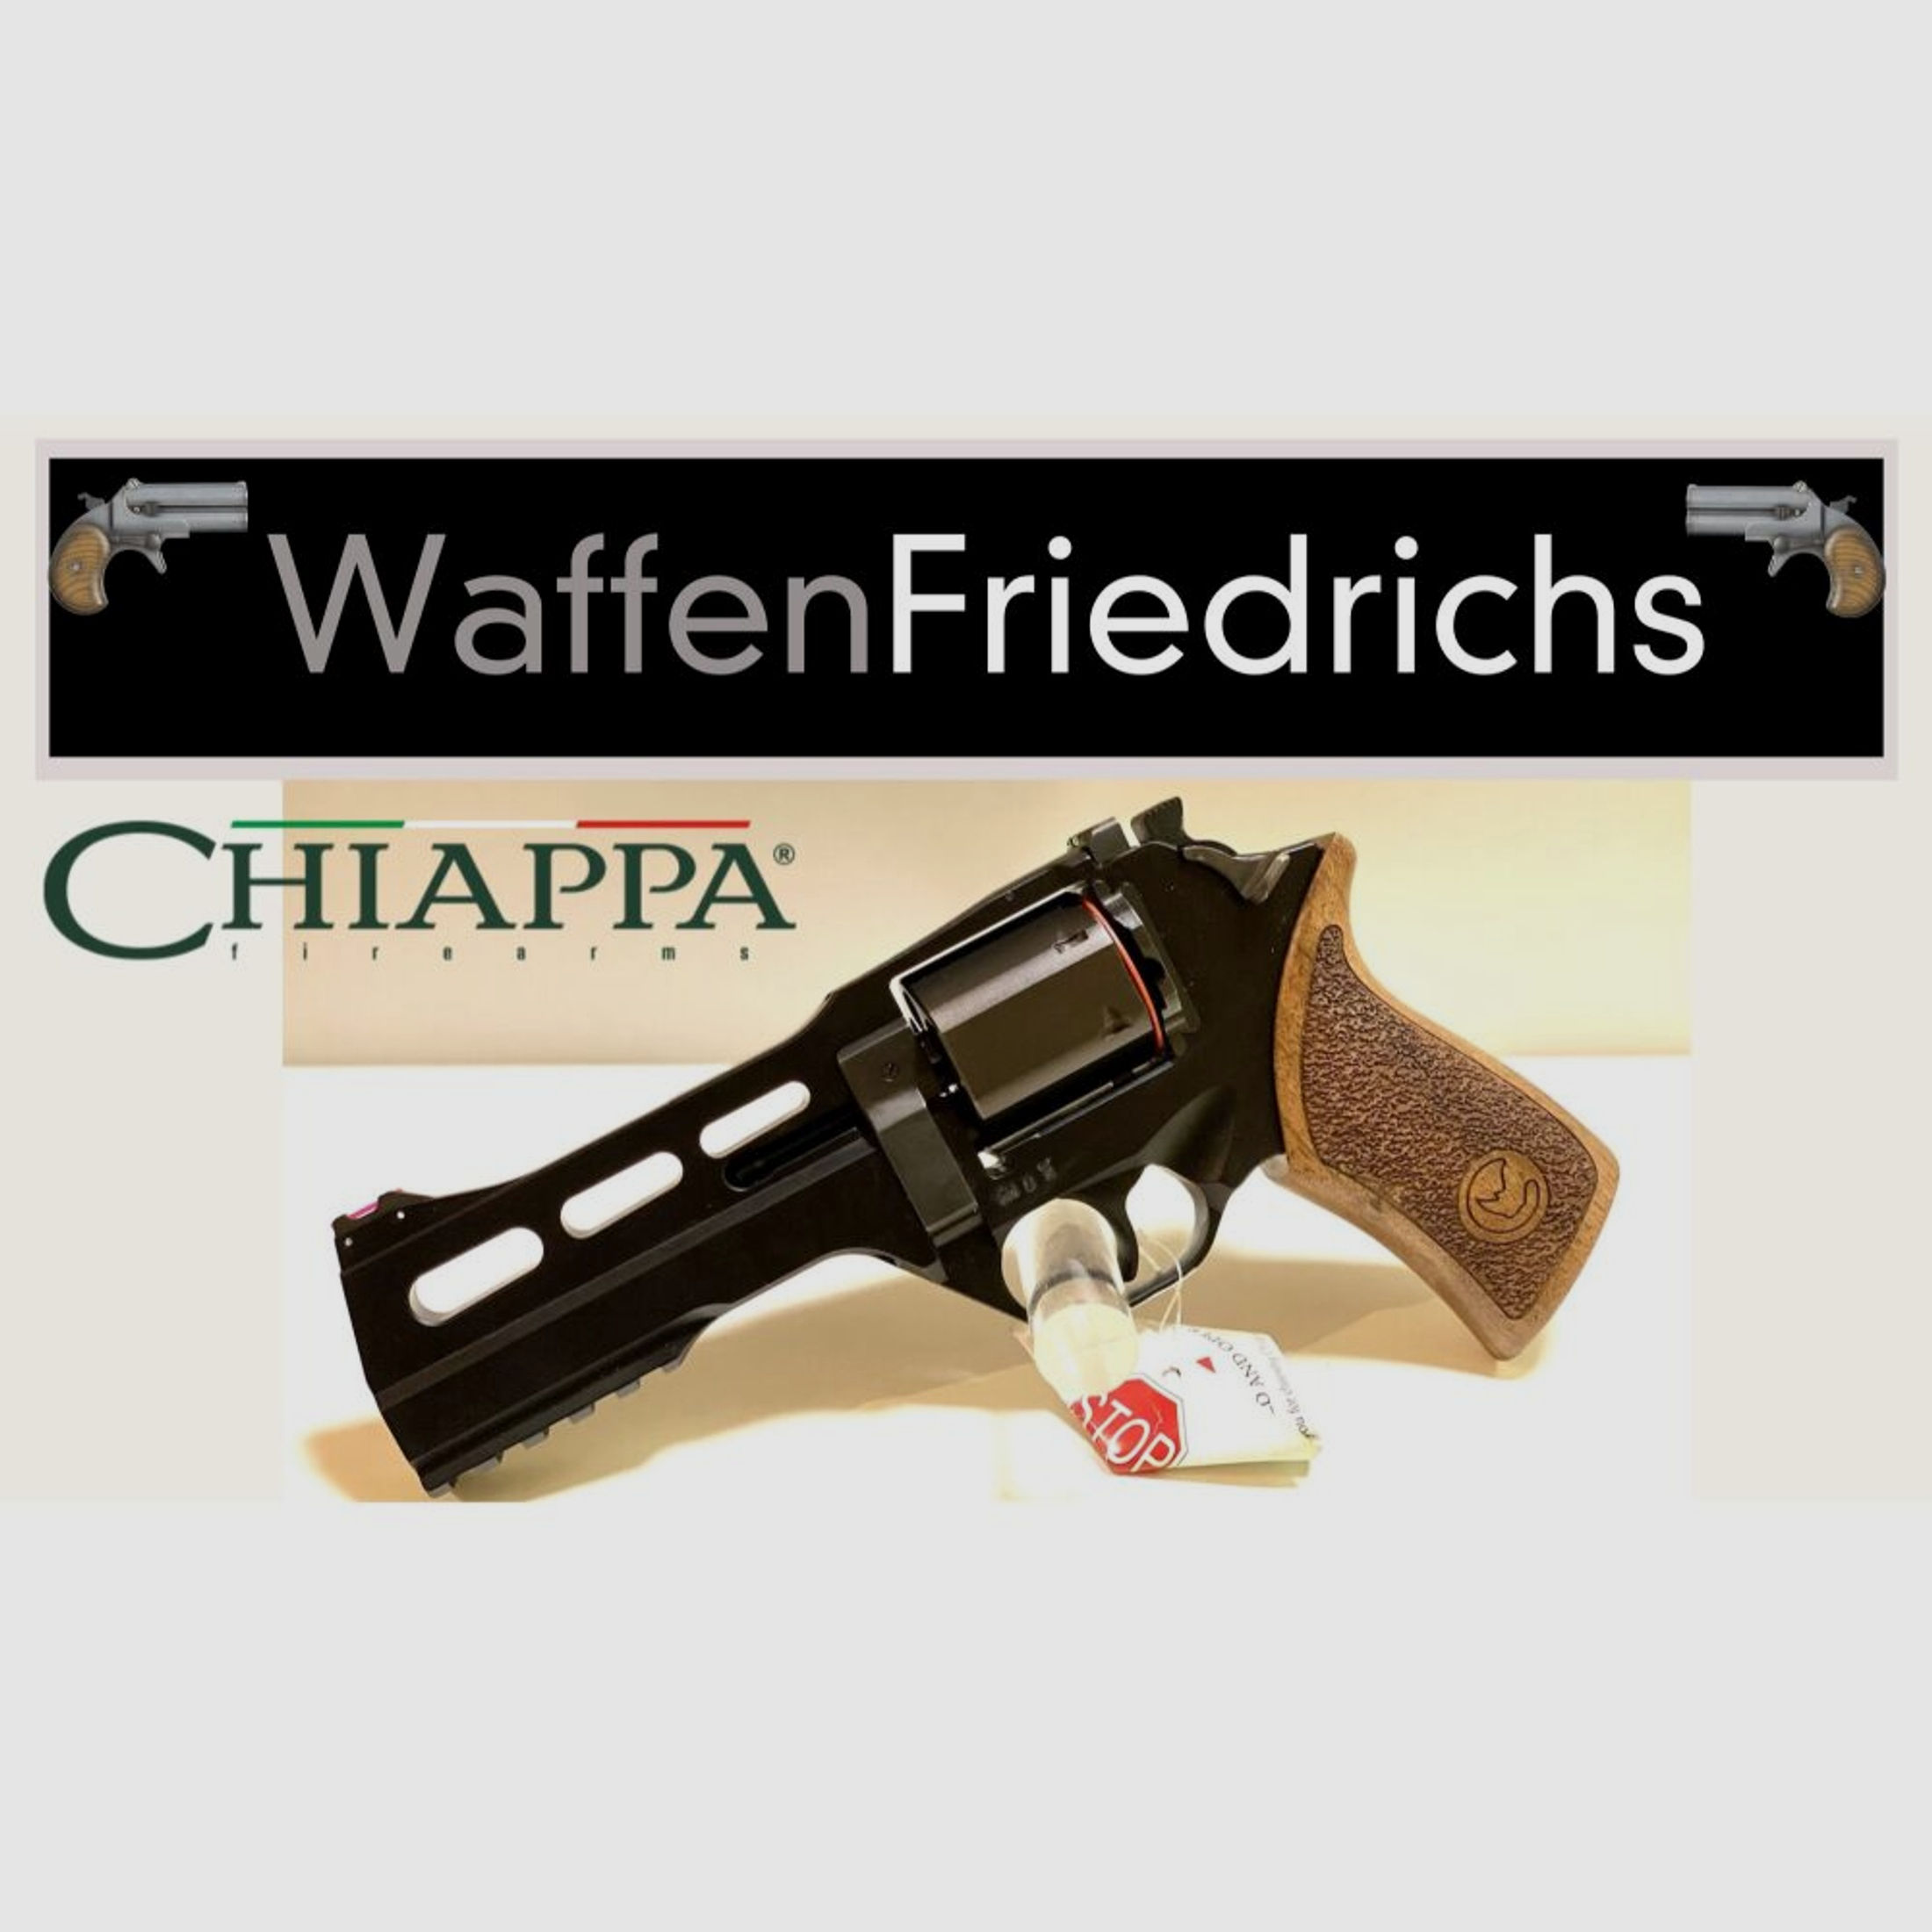 CHIAPPA	 RHINO 50 DS Revolver Brüniert|schwarz - Waffen Friedrichs